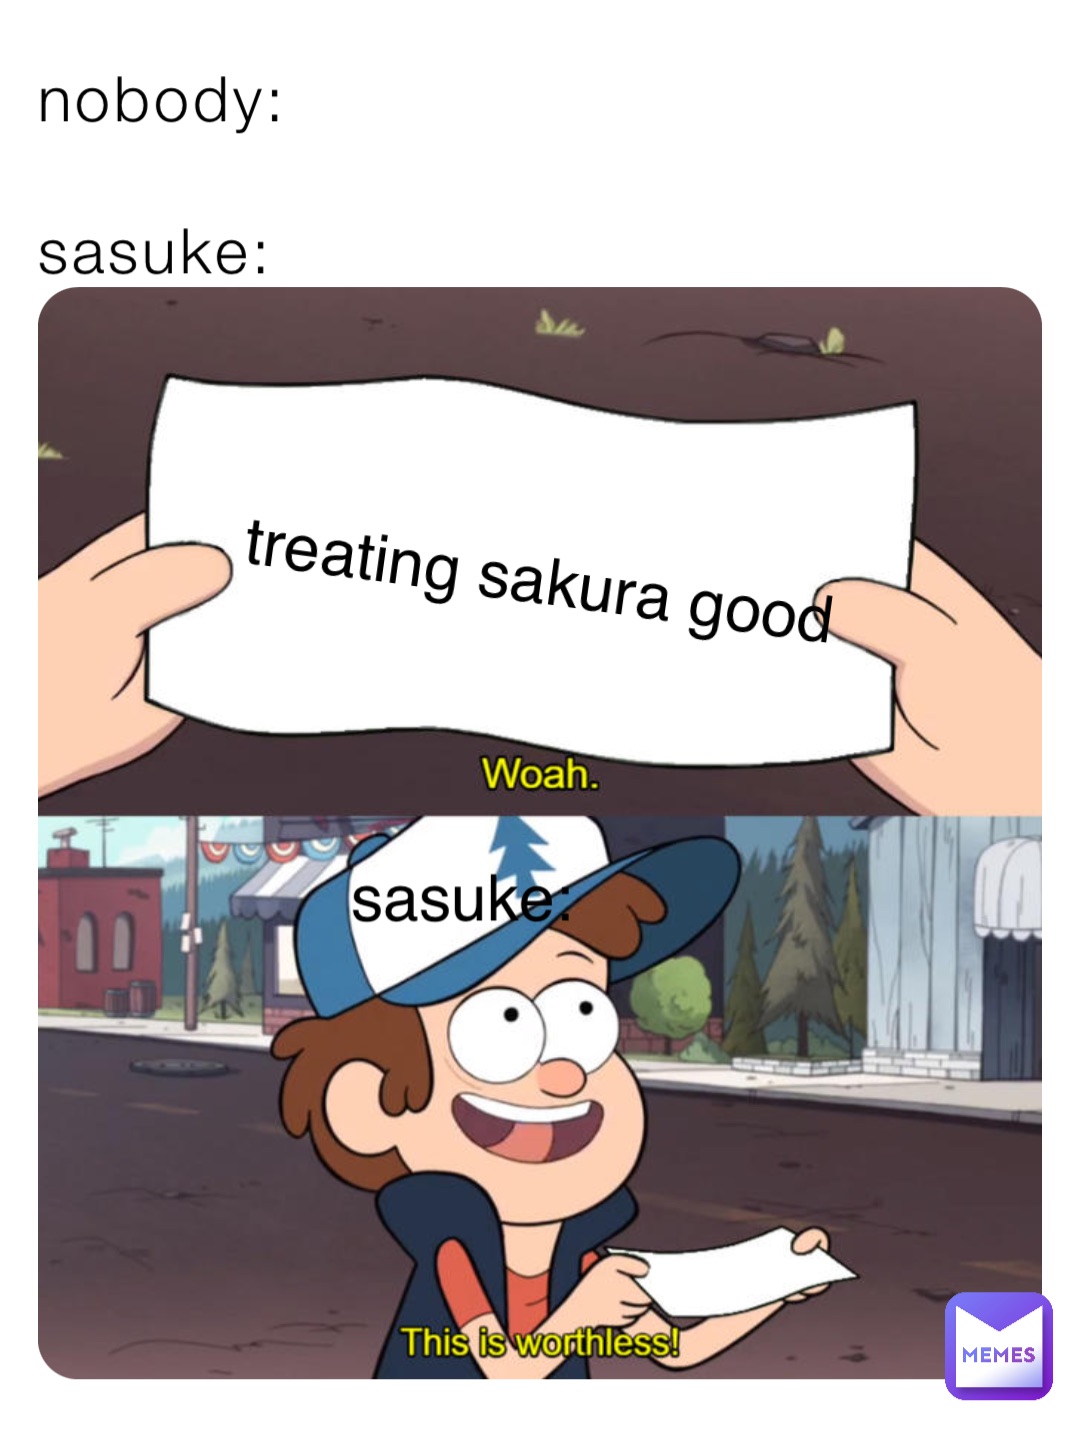 nobody: 

sasuke: treating sakura good sasuke: